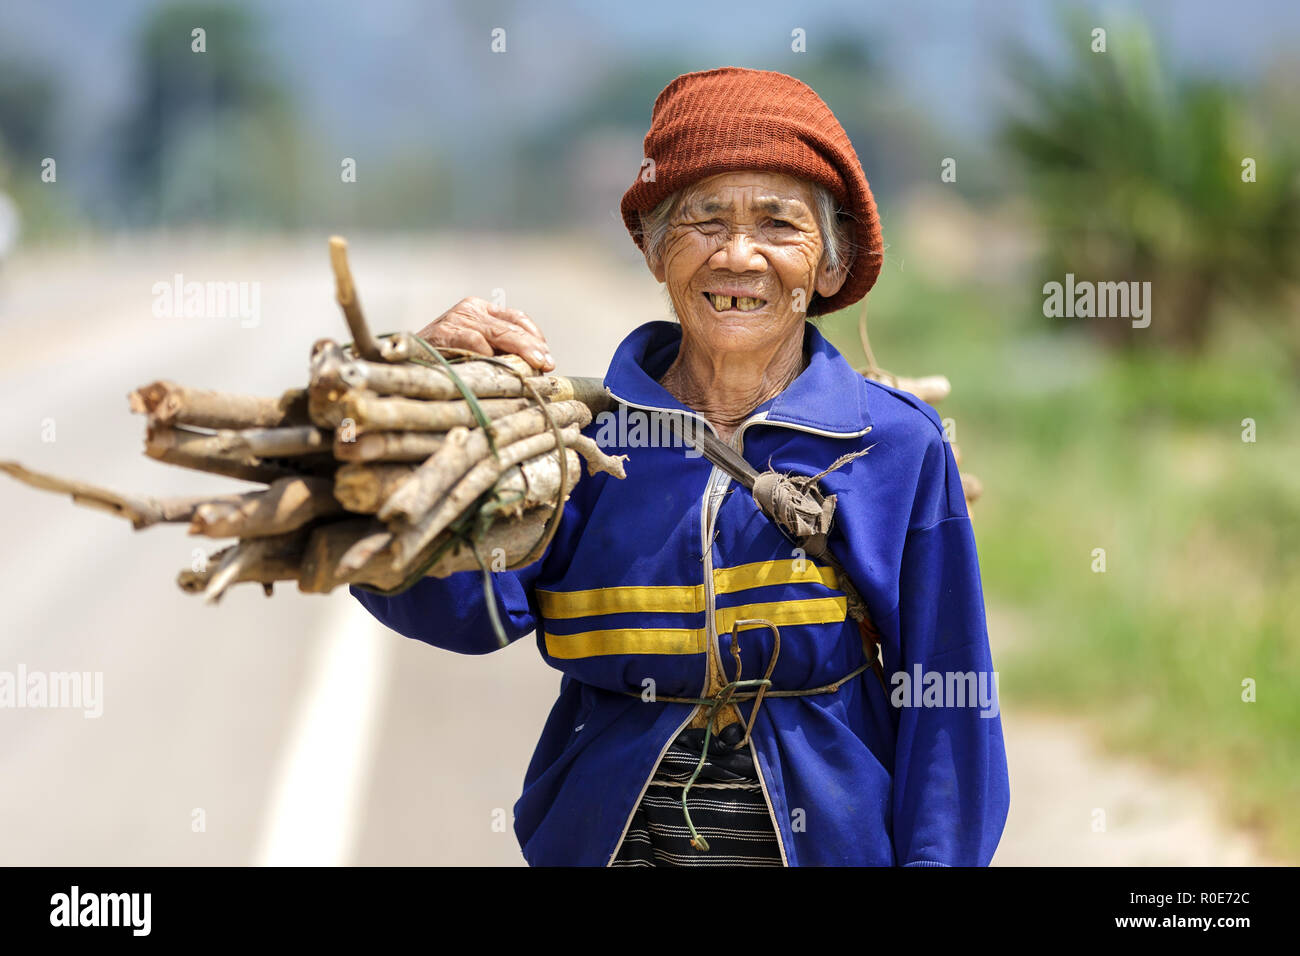 Fu chi fa, Tailandia, marzo 4, 2011: una mujer agricultor está posando en el campo, mostrando sus dientes dañados en fu chi fa, al norte de Tailandia Foto de stock